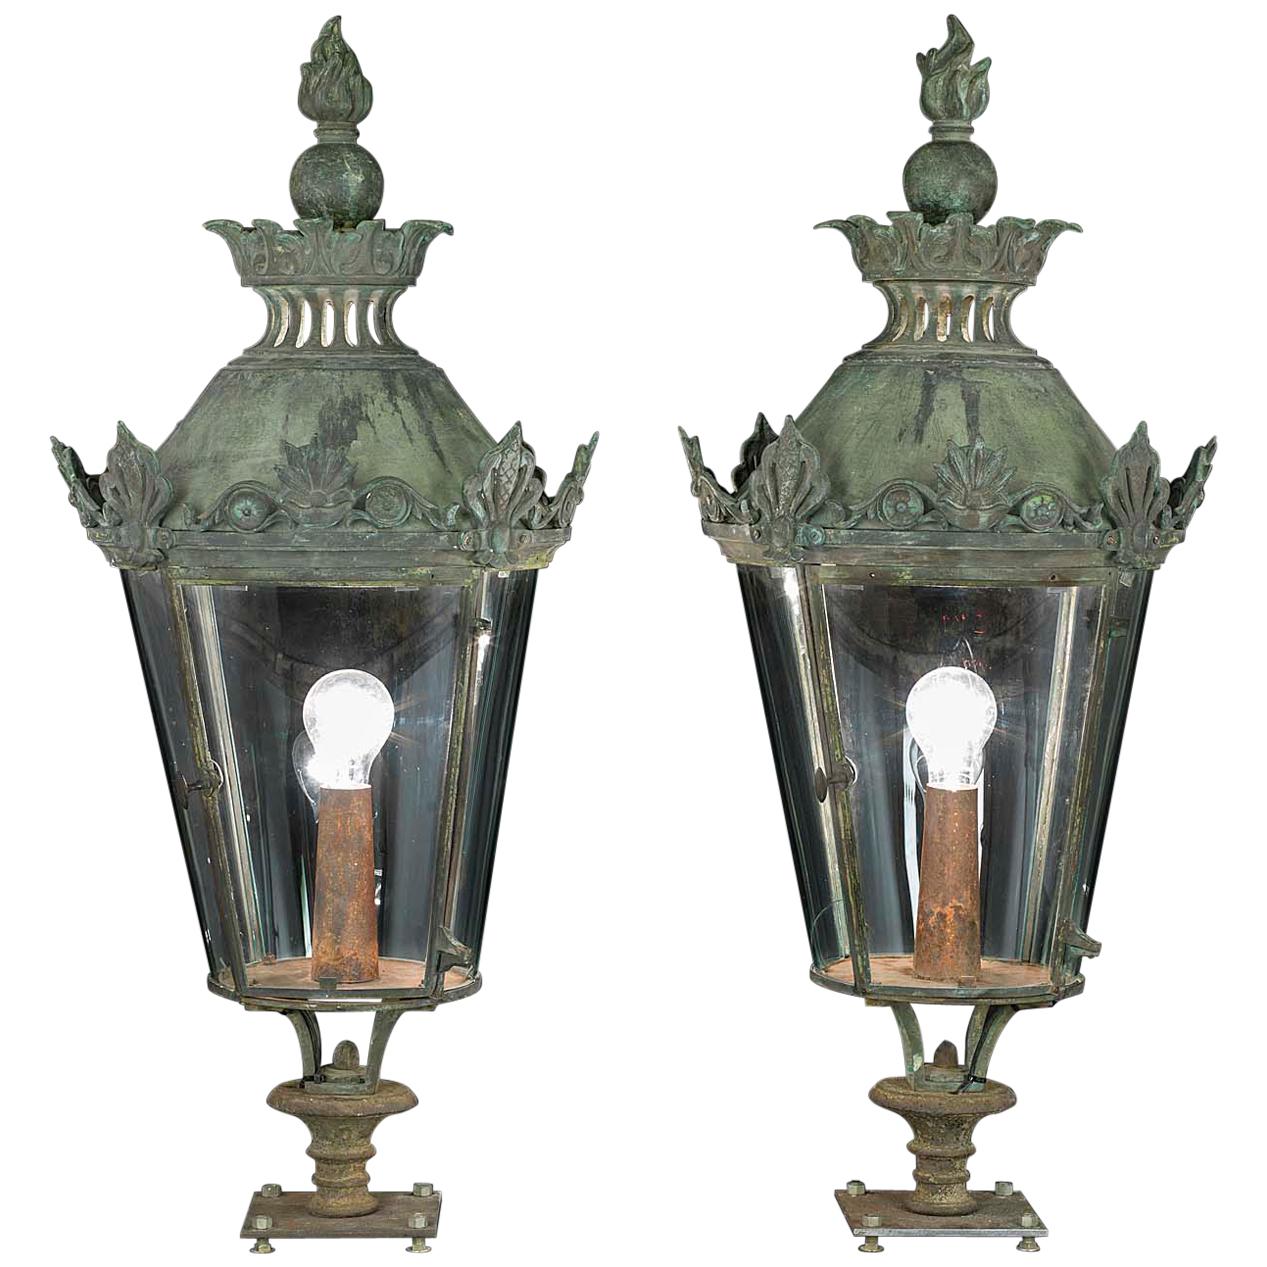 Pair of Regency Lanterns, circa 1820